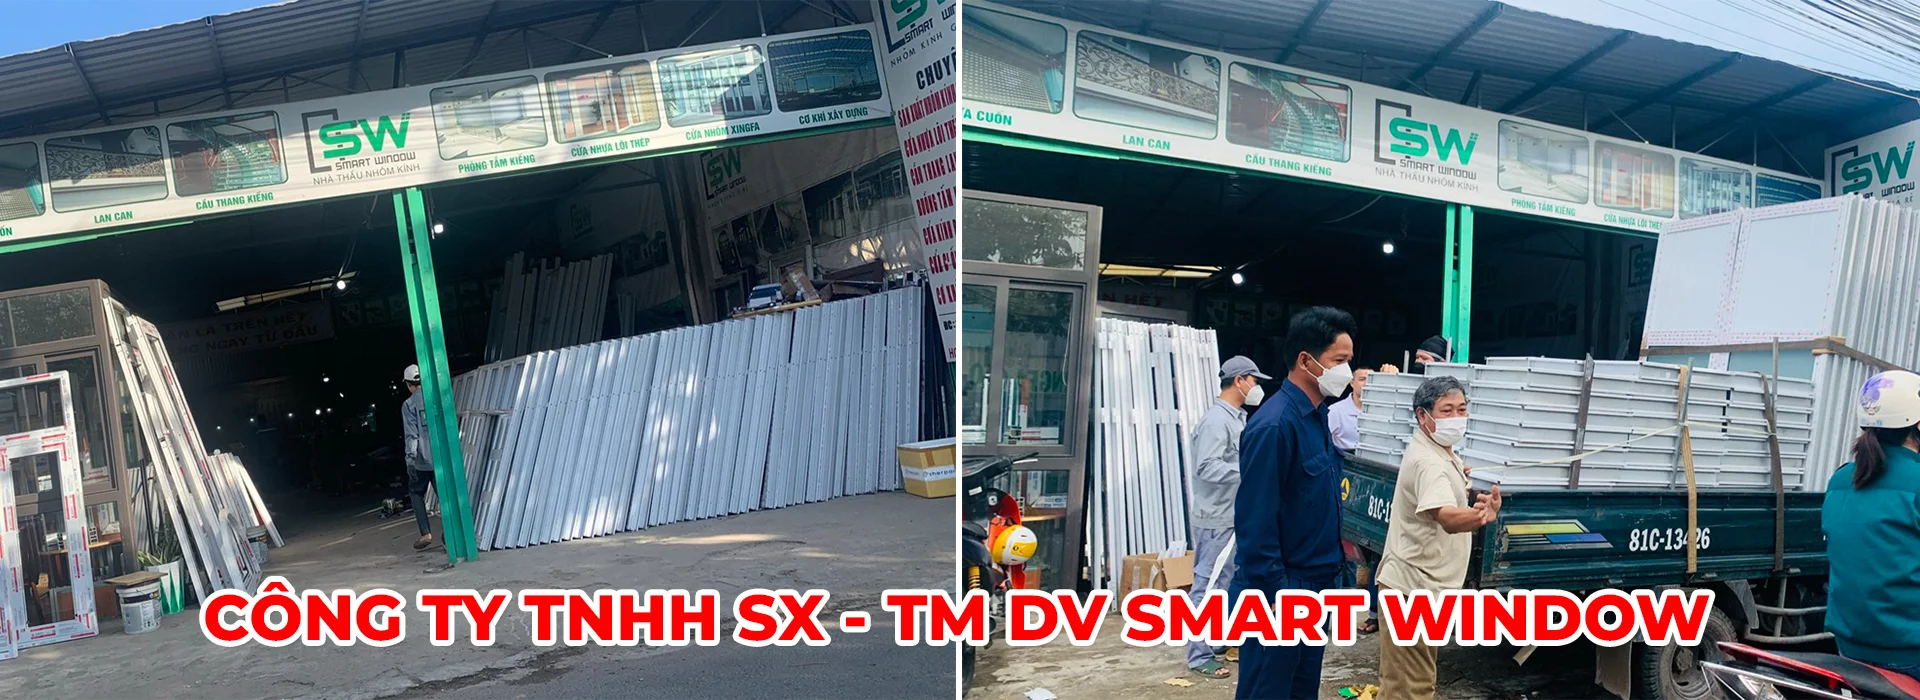 CÔNG TY TNHH SX - TM DV SMART WINDOW